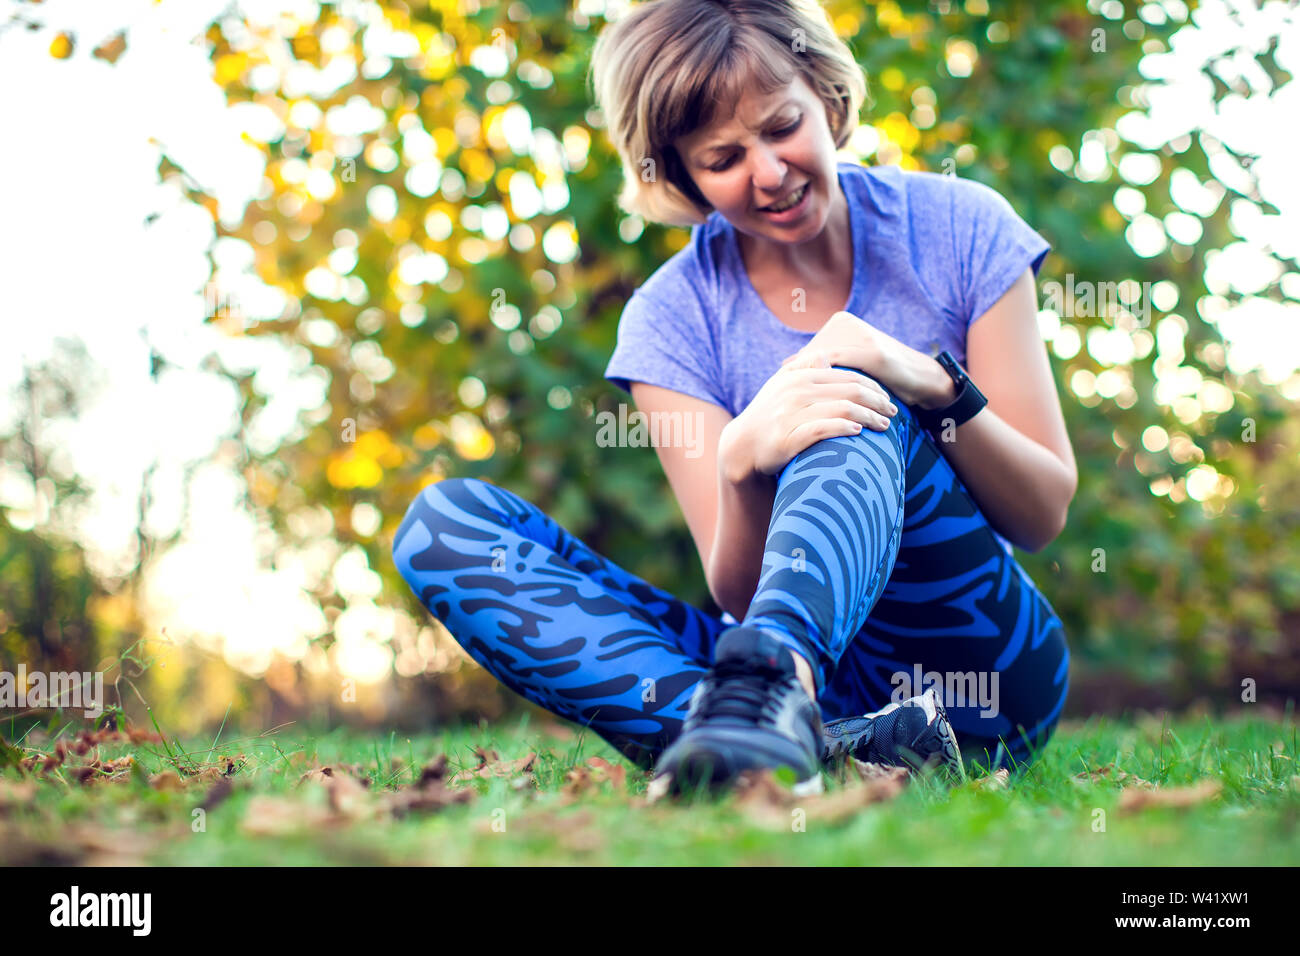 Fitness, Sport, Training und gesunde Lebensweise Konzept - Frau mit verletzten Knie oder Bein im Freien Stockfoto